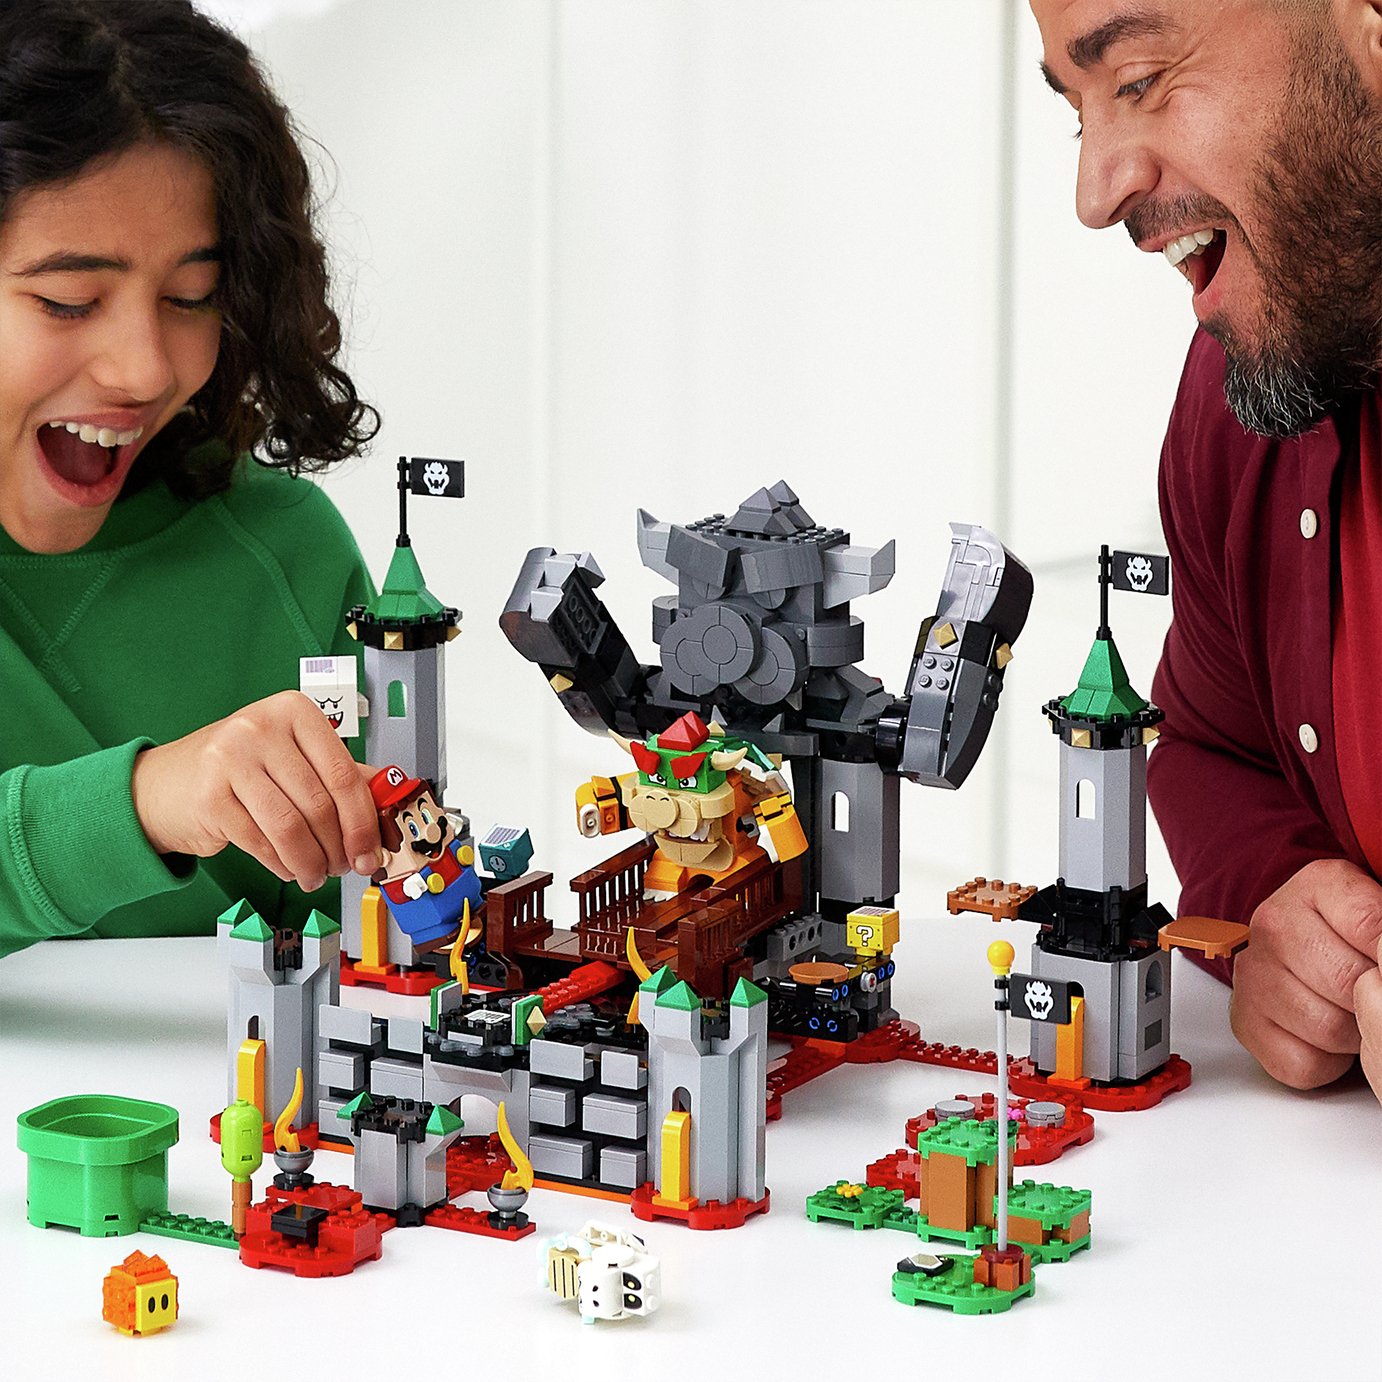 LEGO Super Mario Bowser's Castle Battle Expansion Set 71369 Review